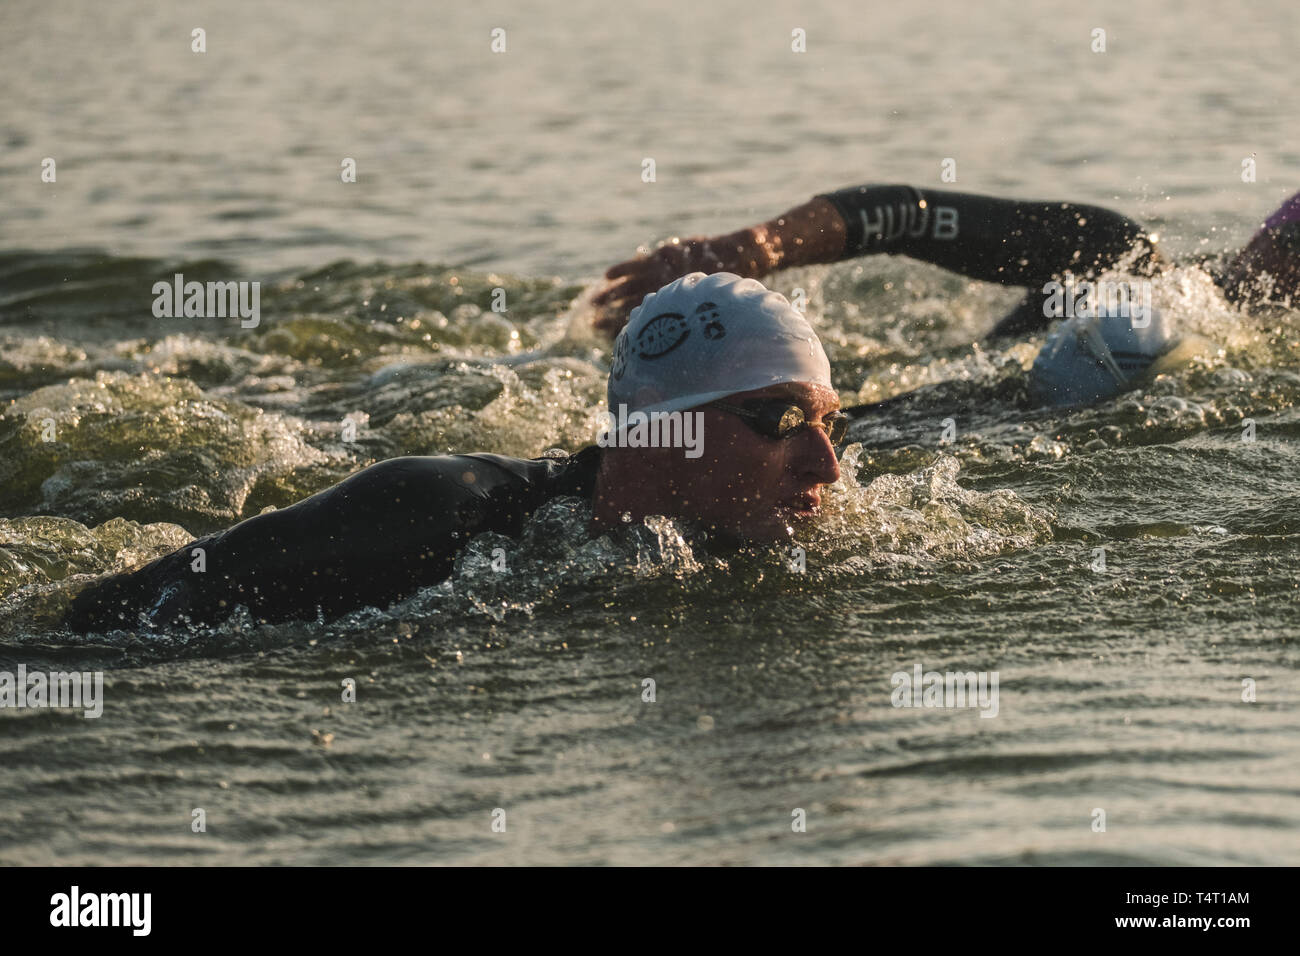 Triatleti nuotare all'avvio dell'Ironman Triathlon a Kiev, Ucraina Foto Stock